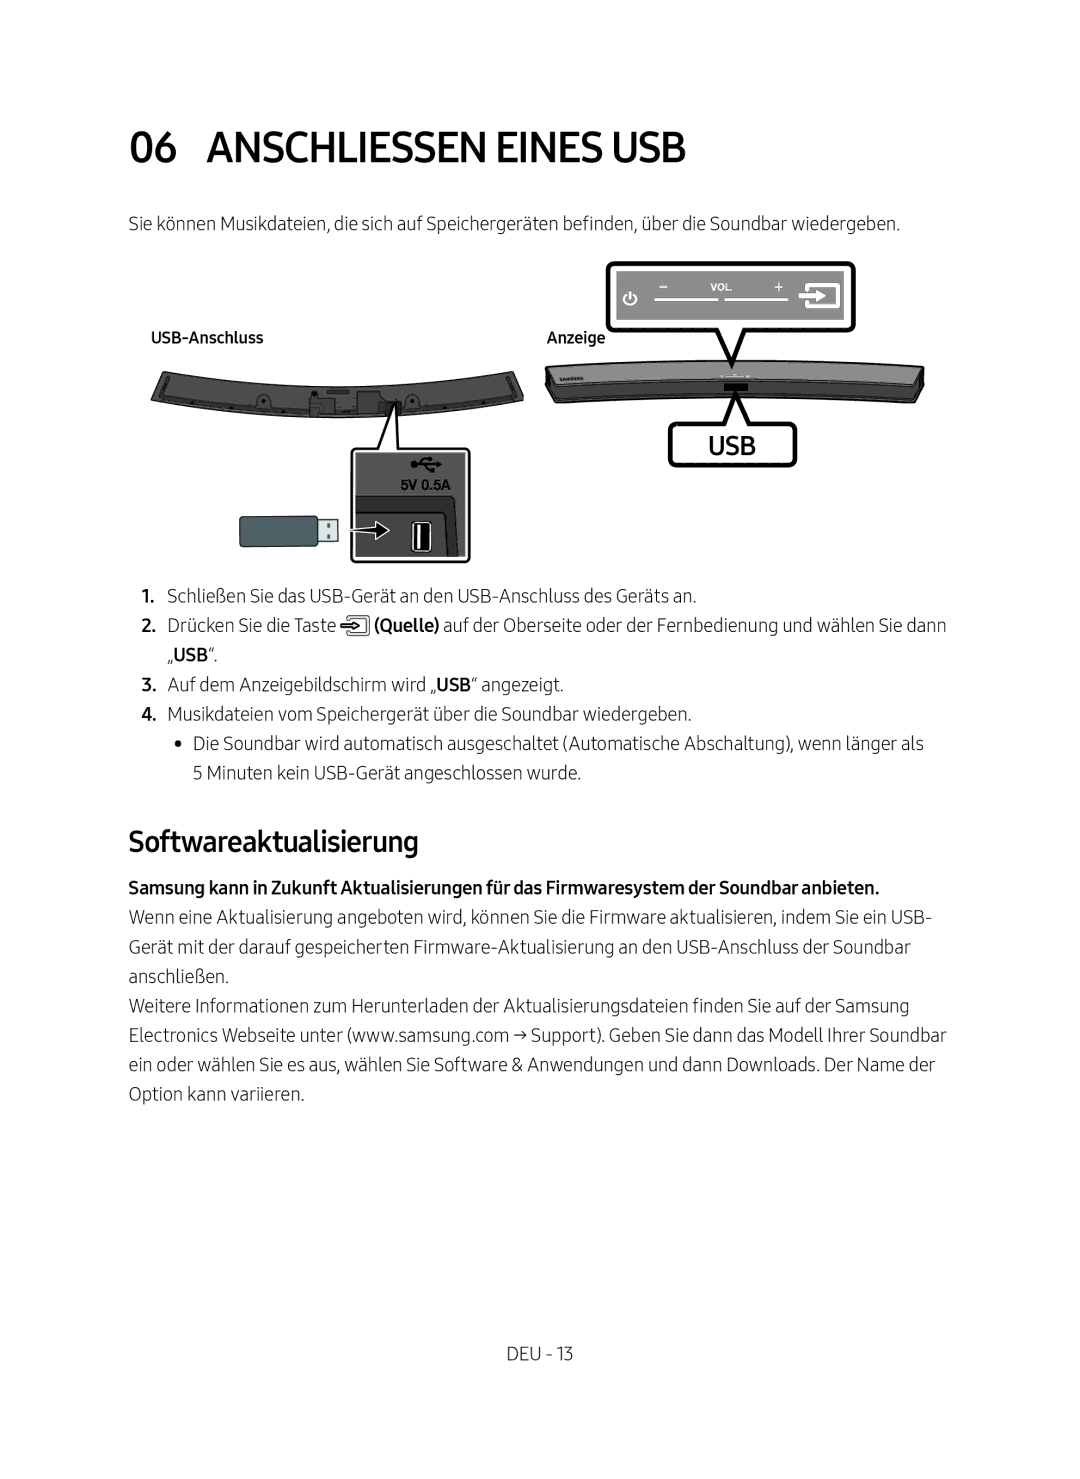 Samsung HW-M4500/EN, HW-M4500/ZG manual Anschliessen eines USB, Softwareaktualisierung, USB-Anschluss 